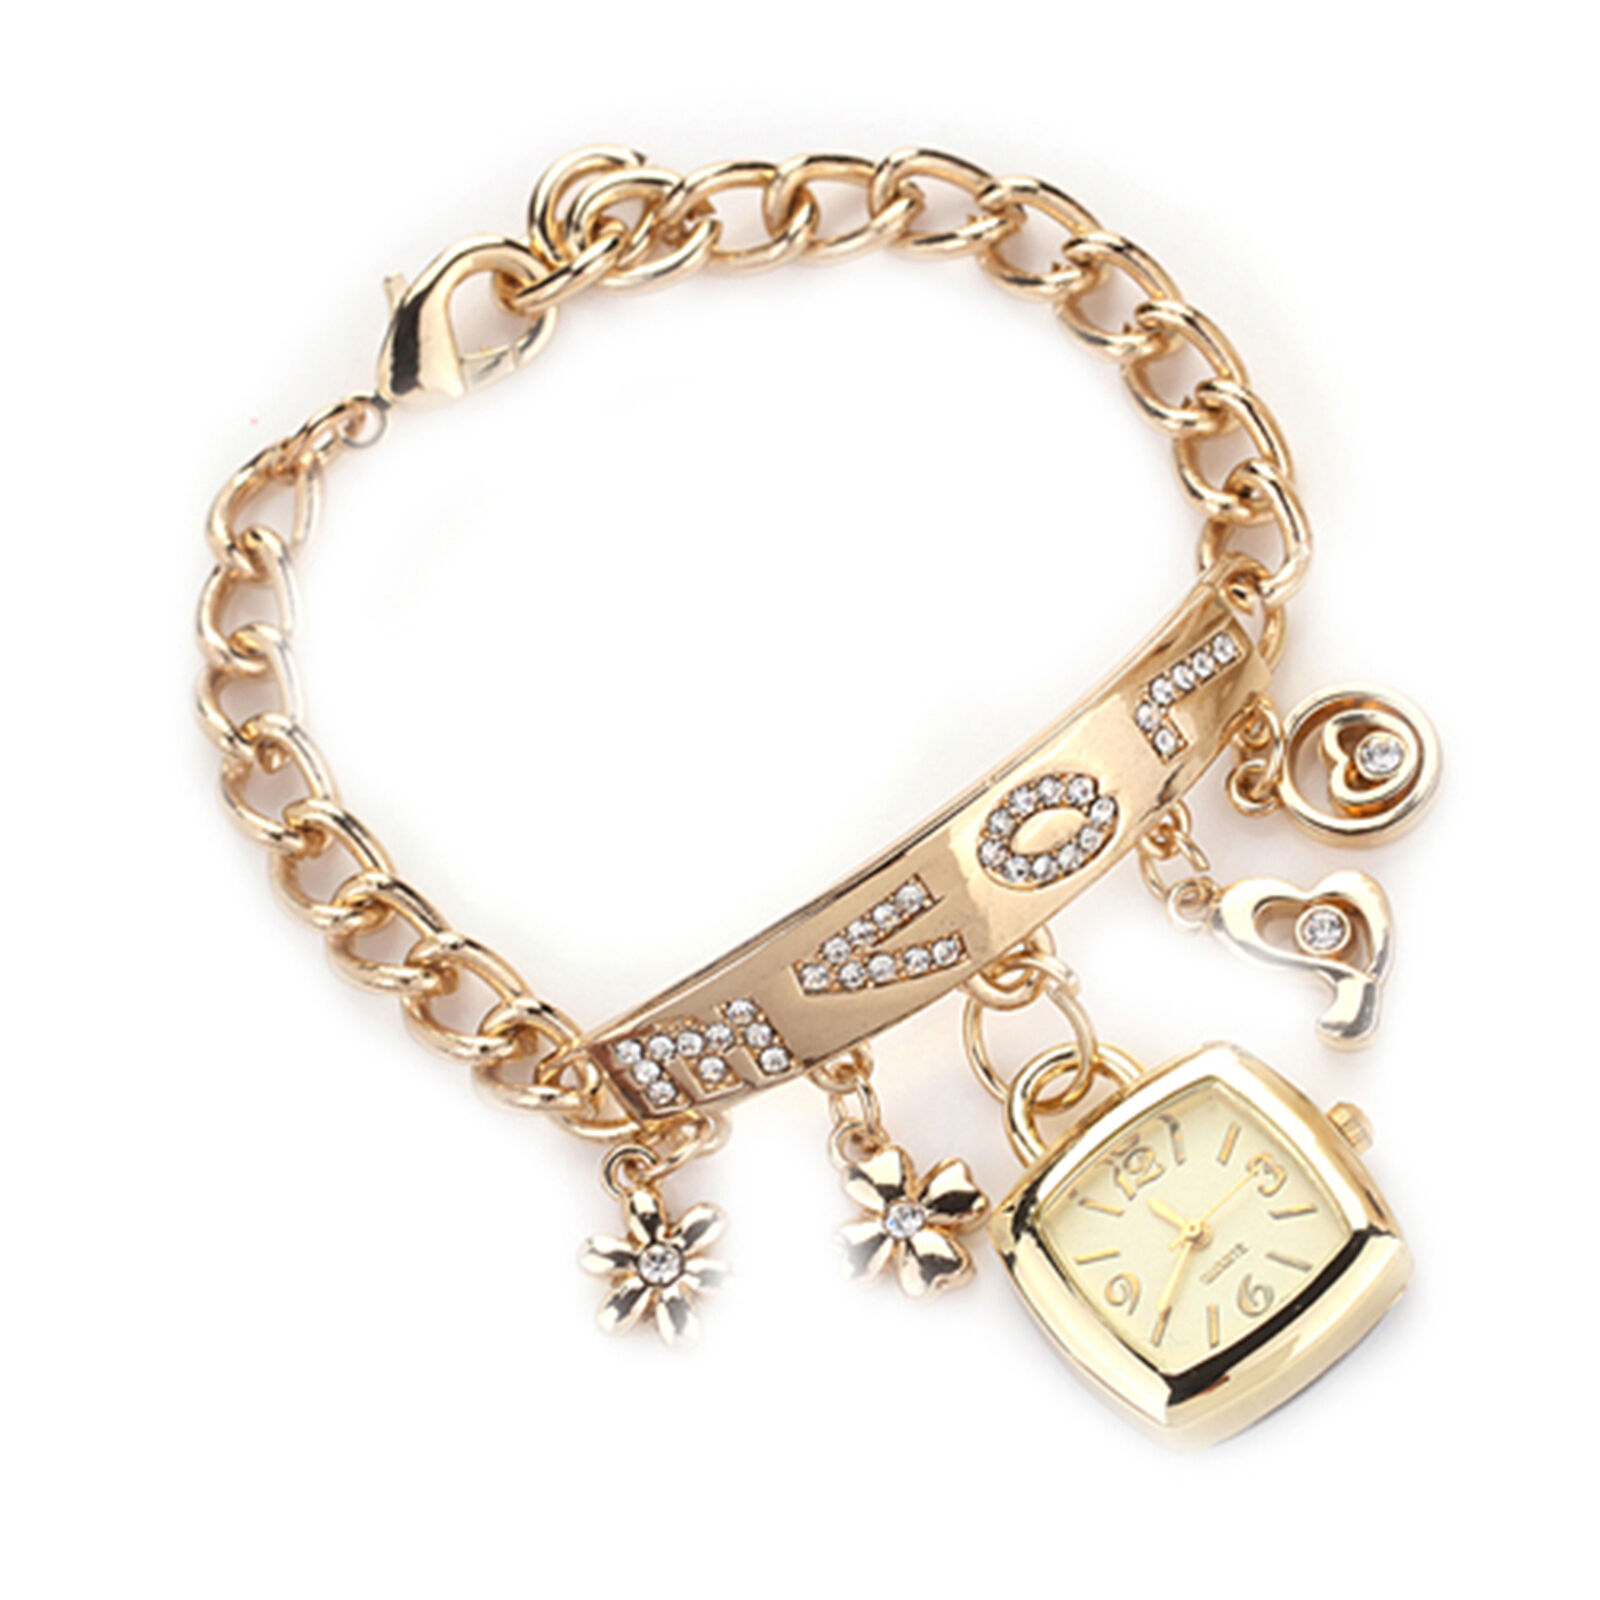 Jewelry Wristwatch Wear-resistant Shiny Surface Stylish Quartz Bracelet Watch Unbranded - фотография #6